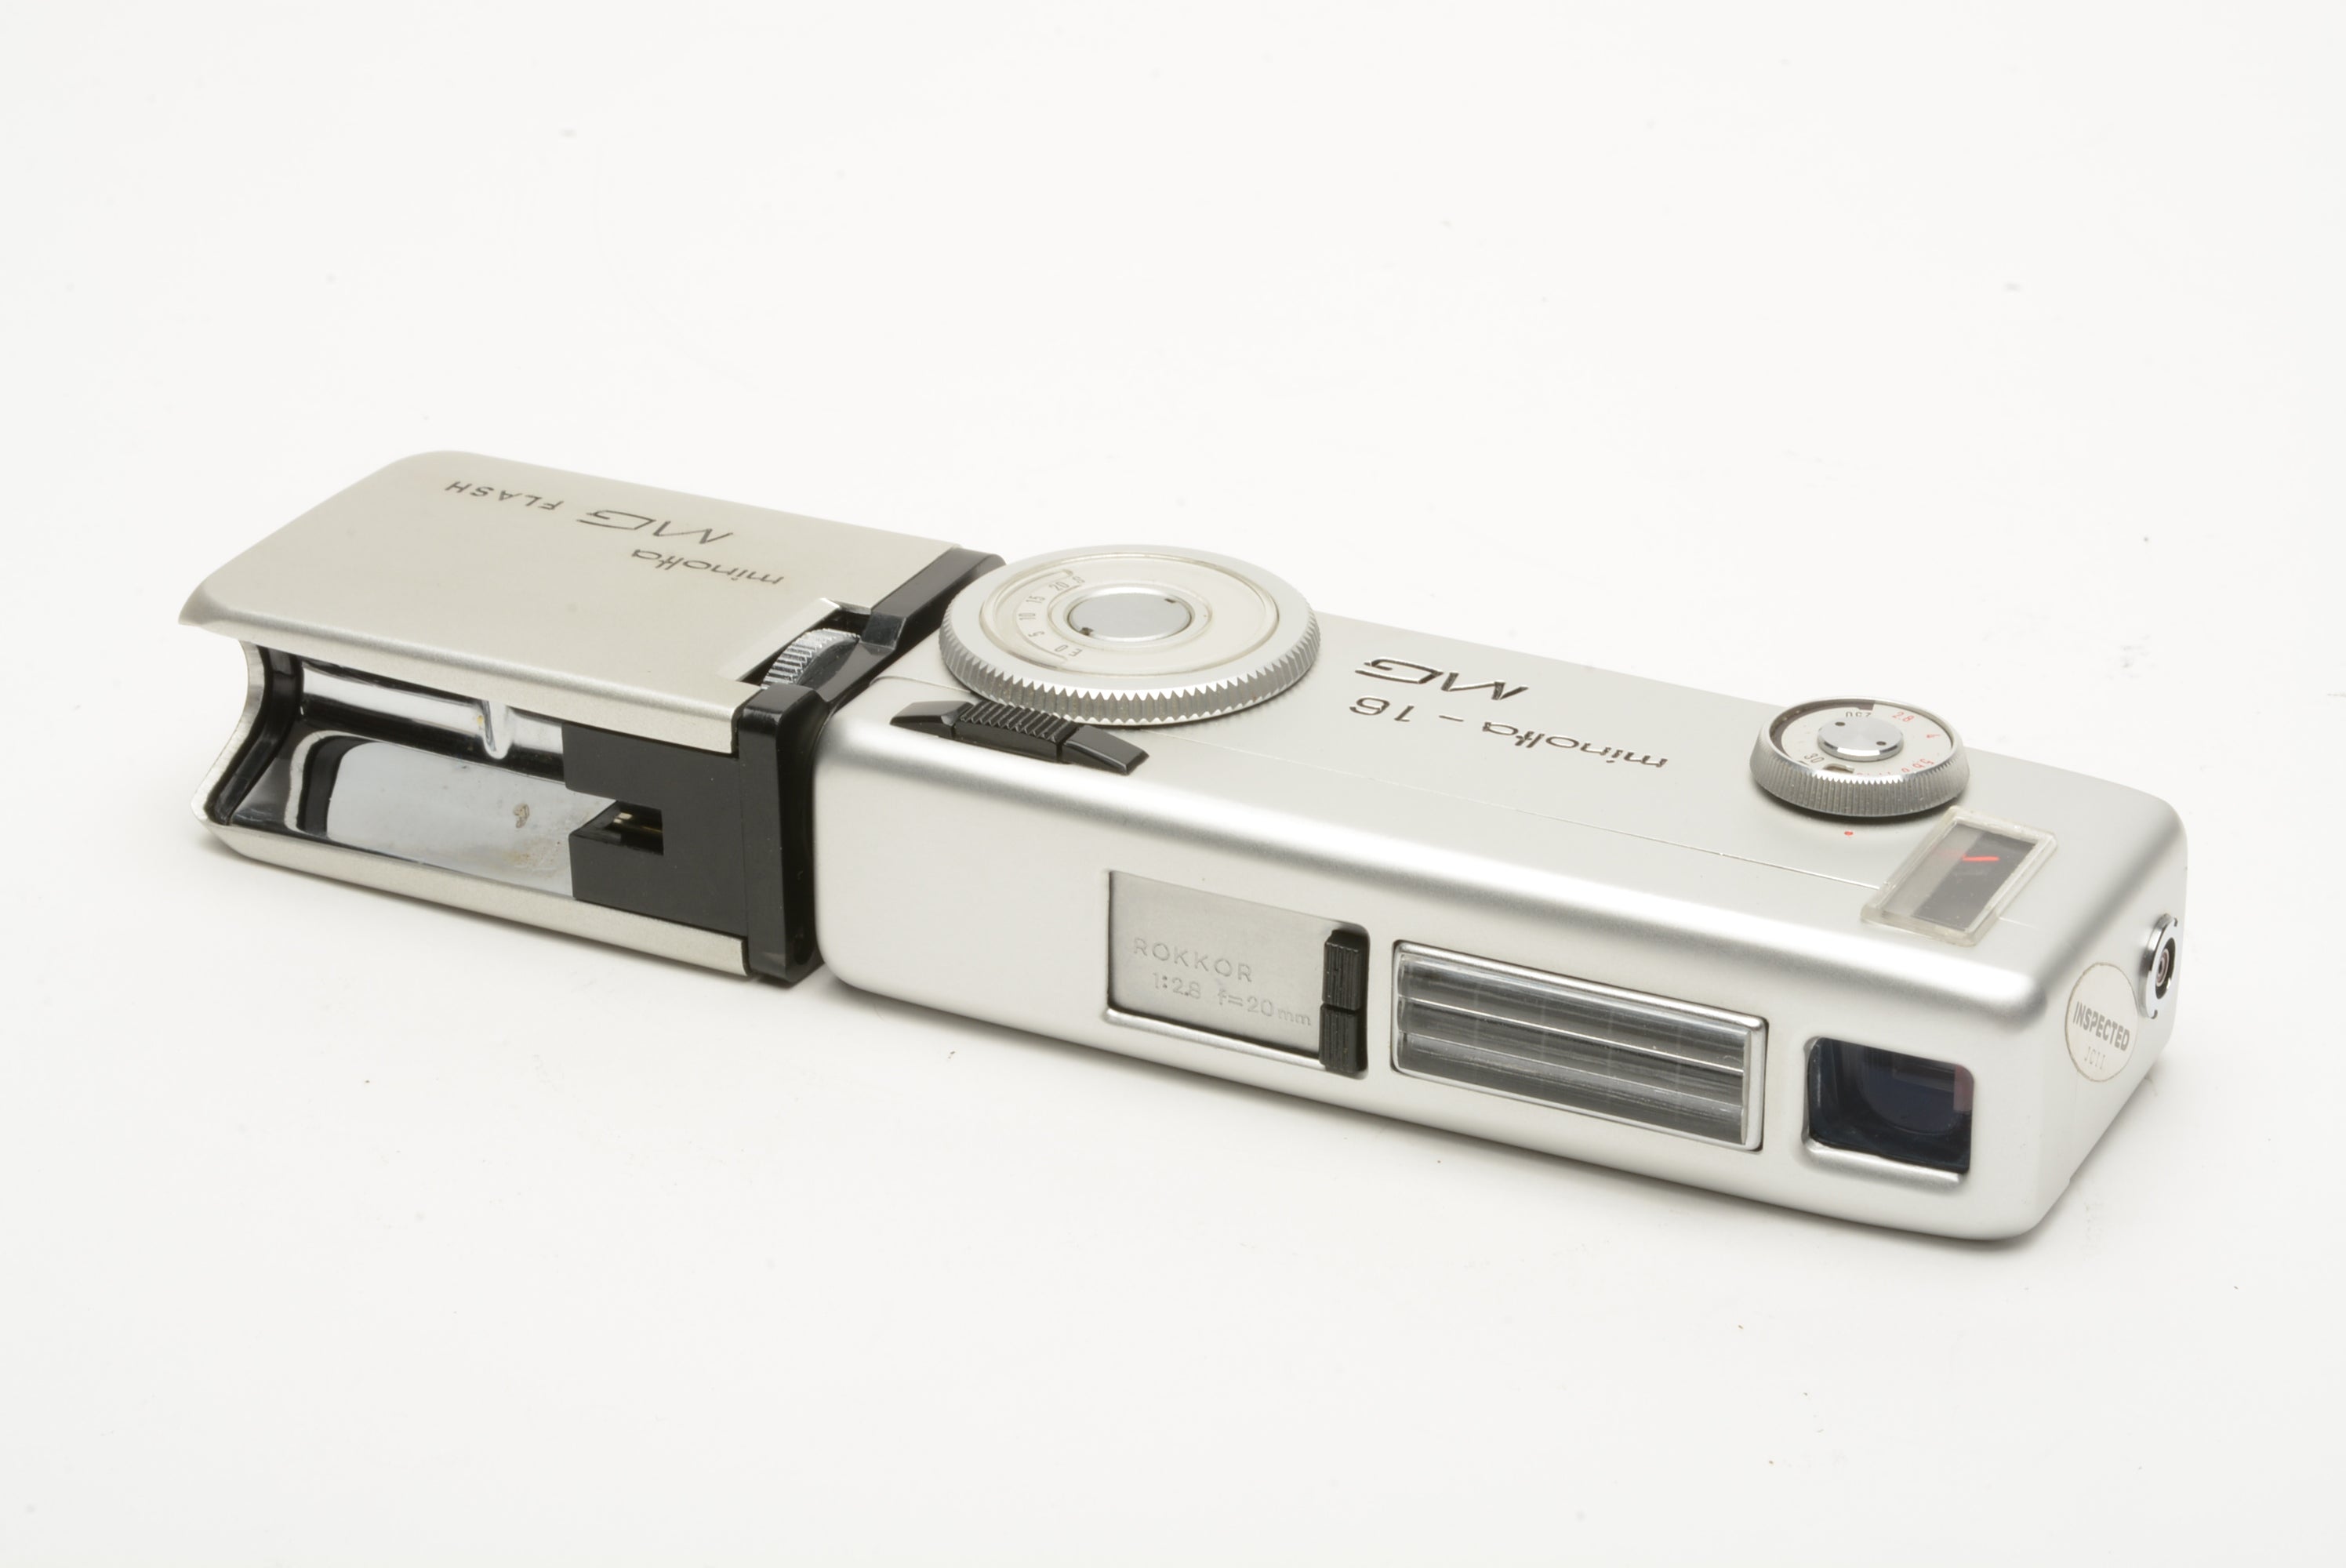 Minolta-16 MG 16mm Film Camera w/Rokkor 20mm f/2.8, MG Flash